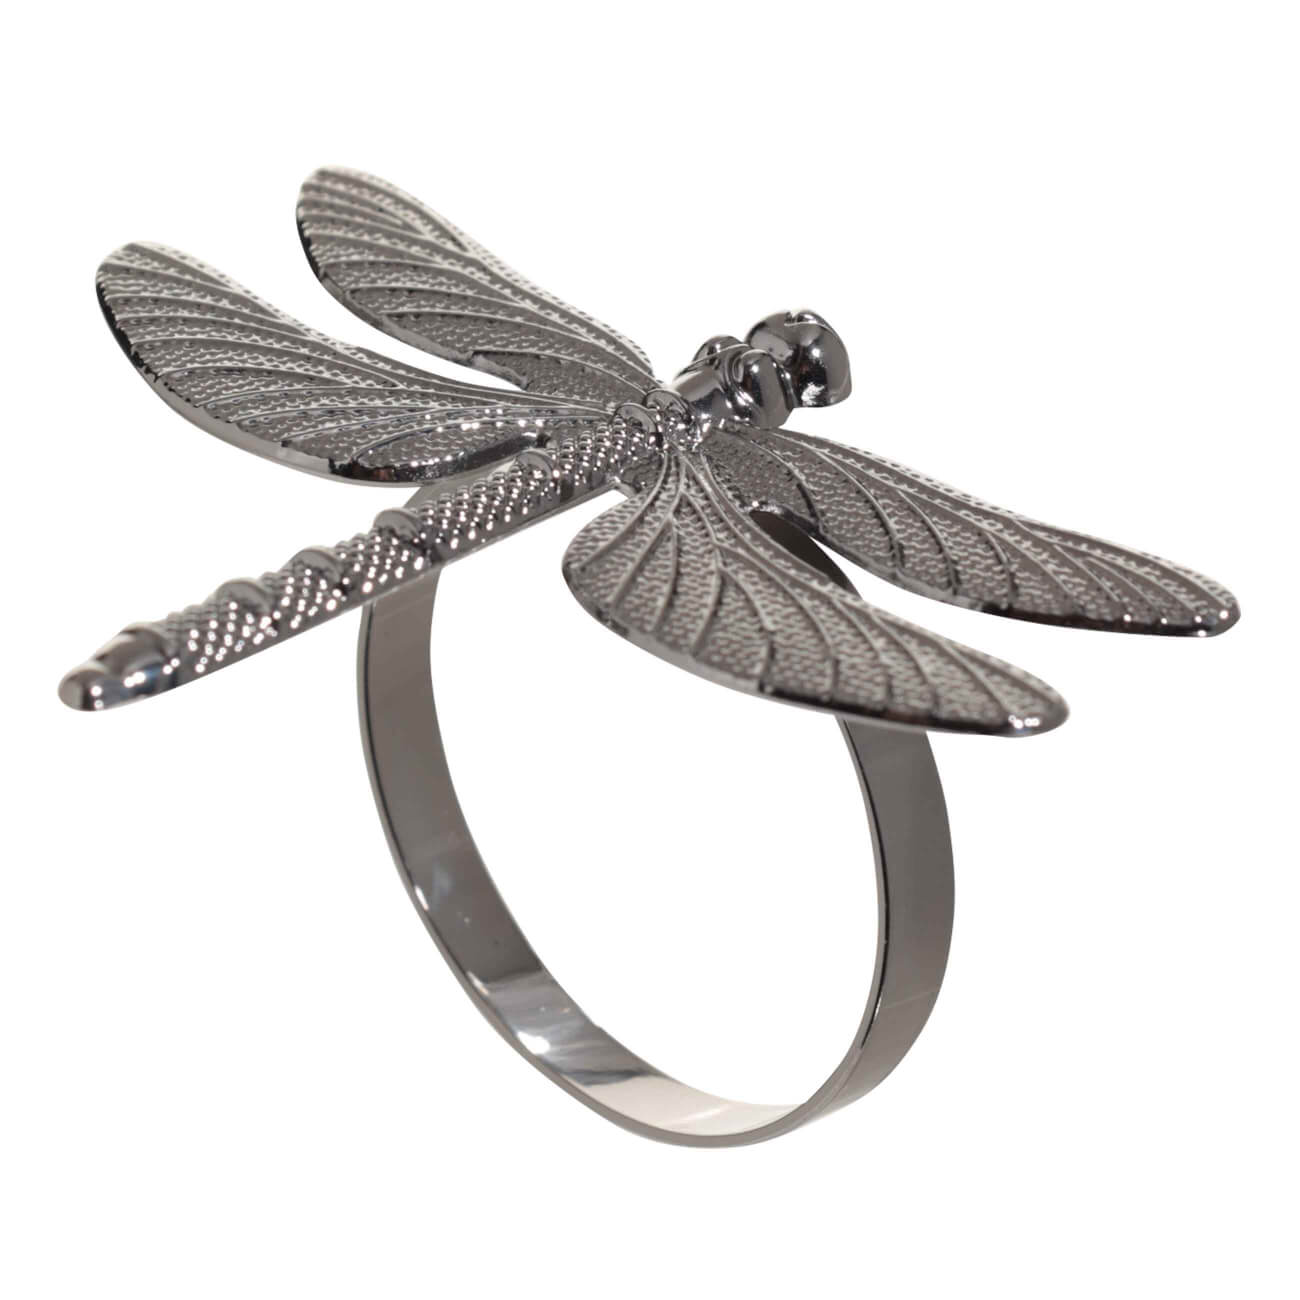 Кольцо для салфеток, 7 см, металл, черное, Стрекоза, Dragonfly кольцо amore ок ное в серебре безразмерно